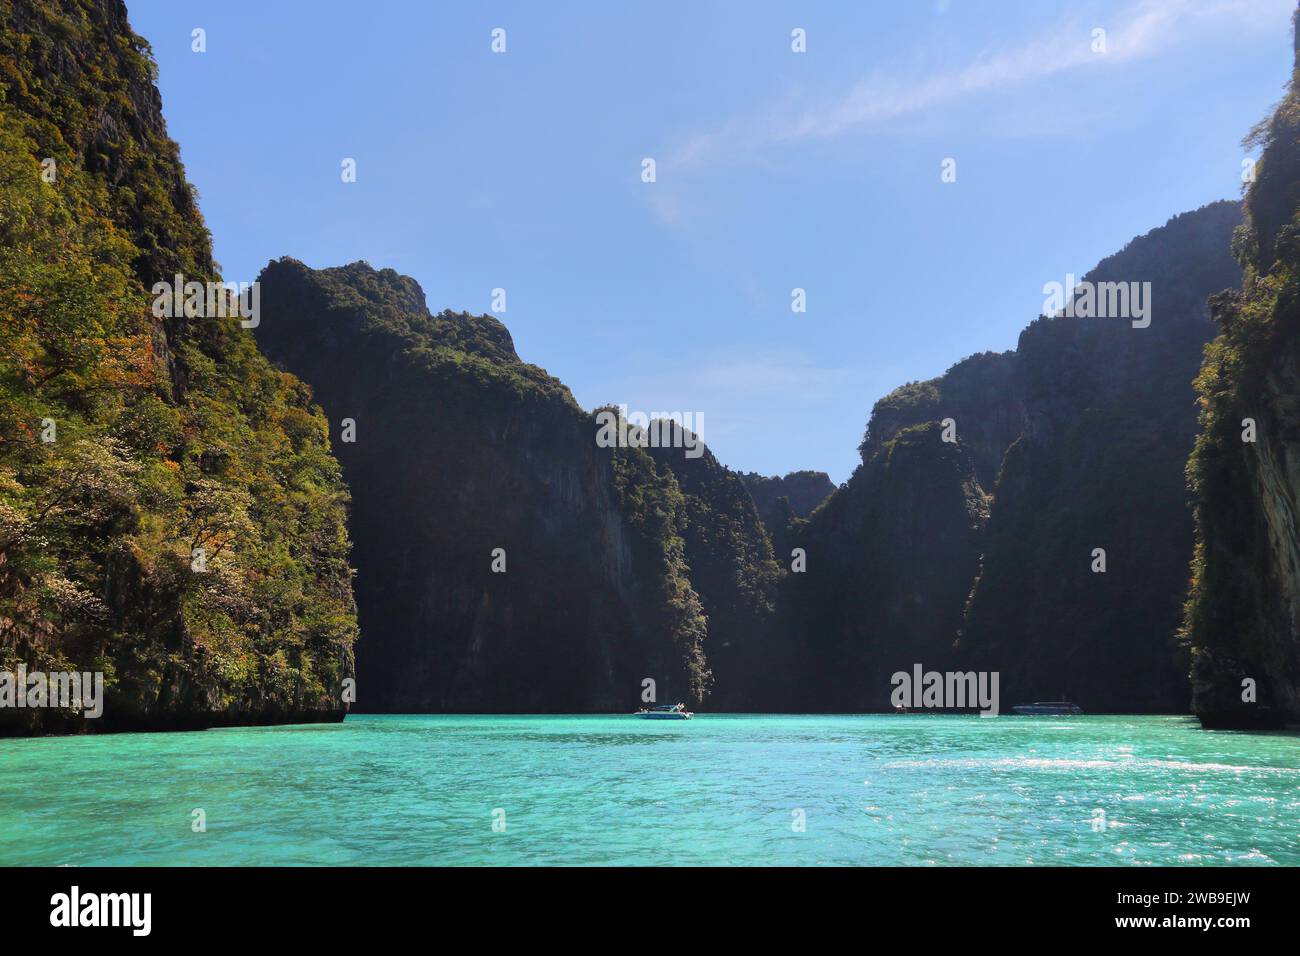 Falaises de Maya Bay. Paysage de Thaïlande - paysage de parc national marin thaïlandais. Île de Ko Phi Phi Leh dans la province de Krabi. Banque D'Images